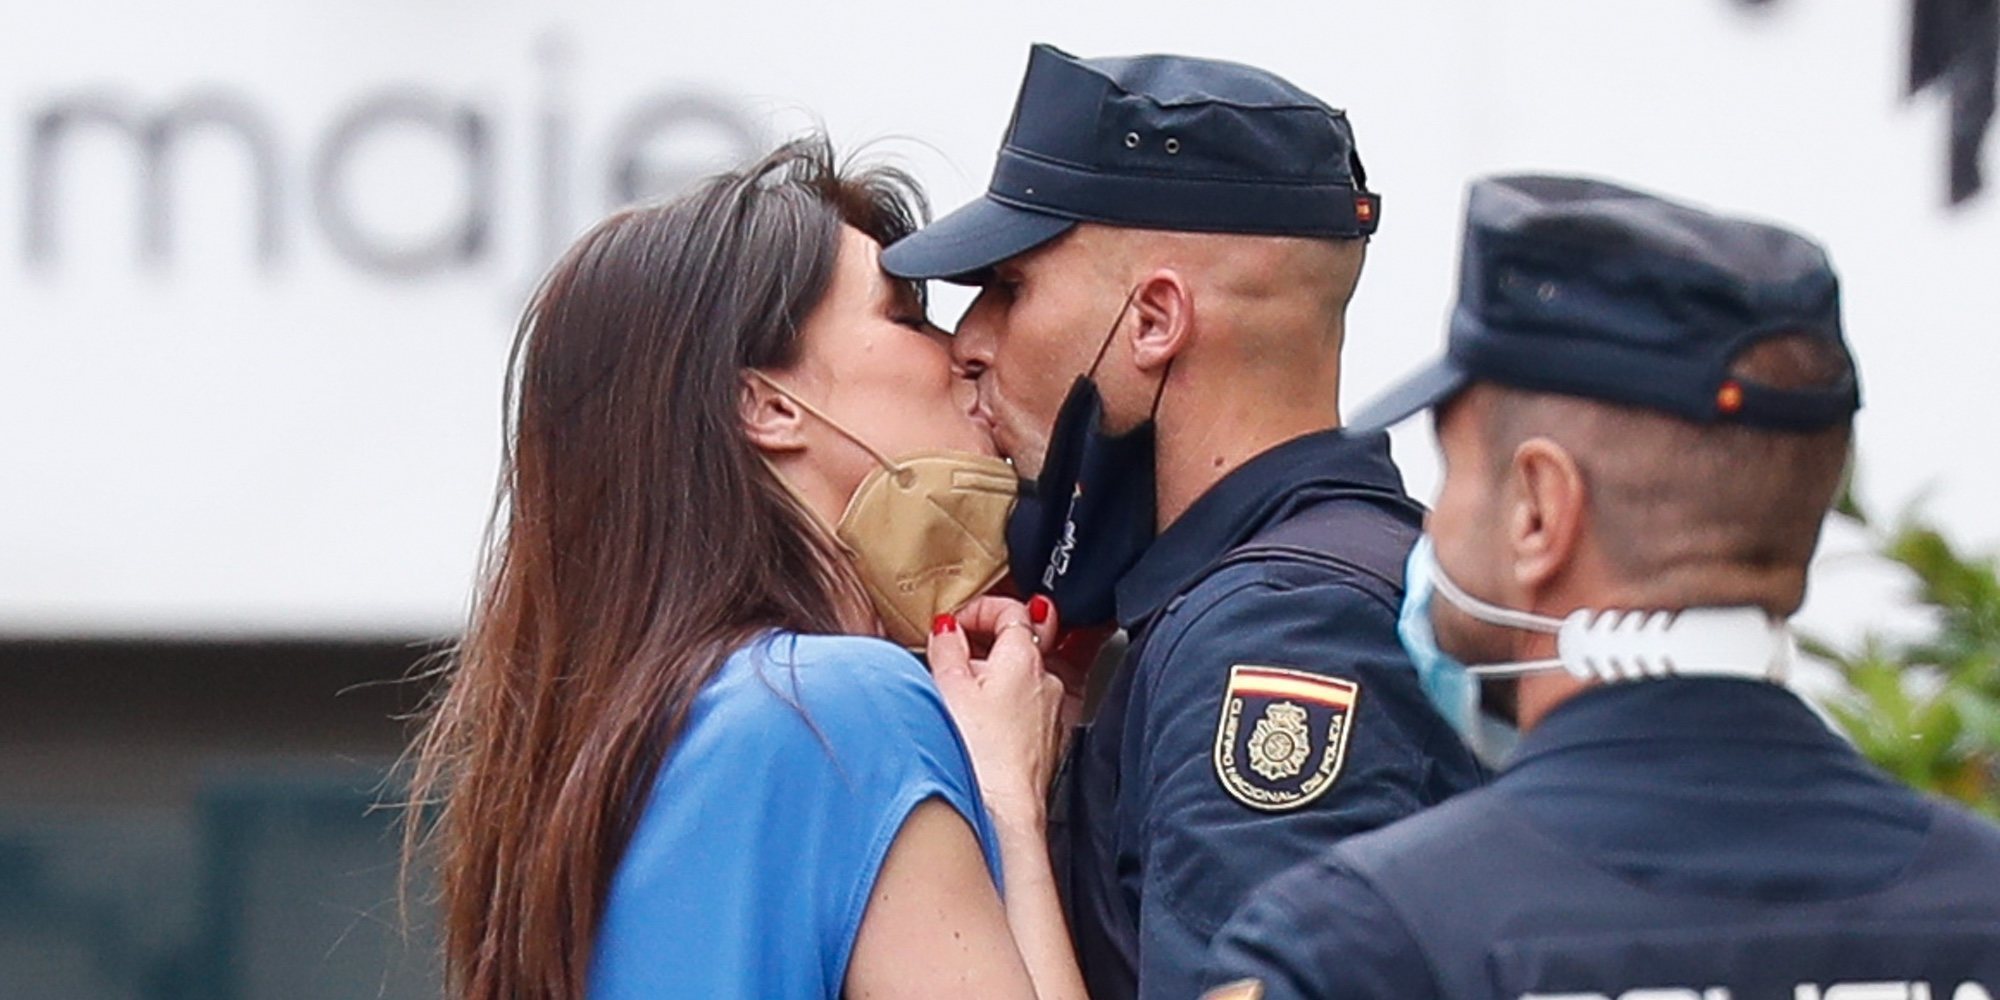 Sonia Ferrer, enamorada de un policía: "De repente aparece el hombre más increíble y maravilloso"